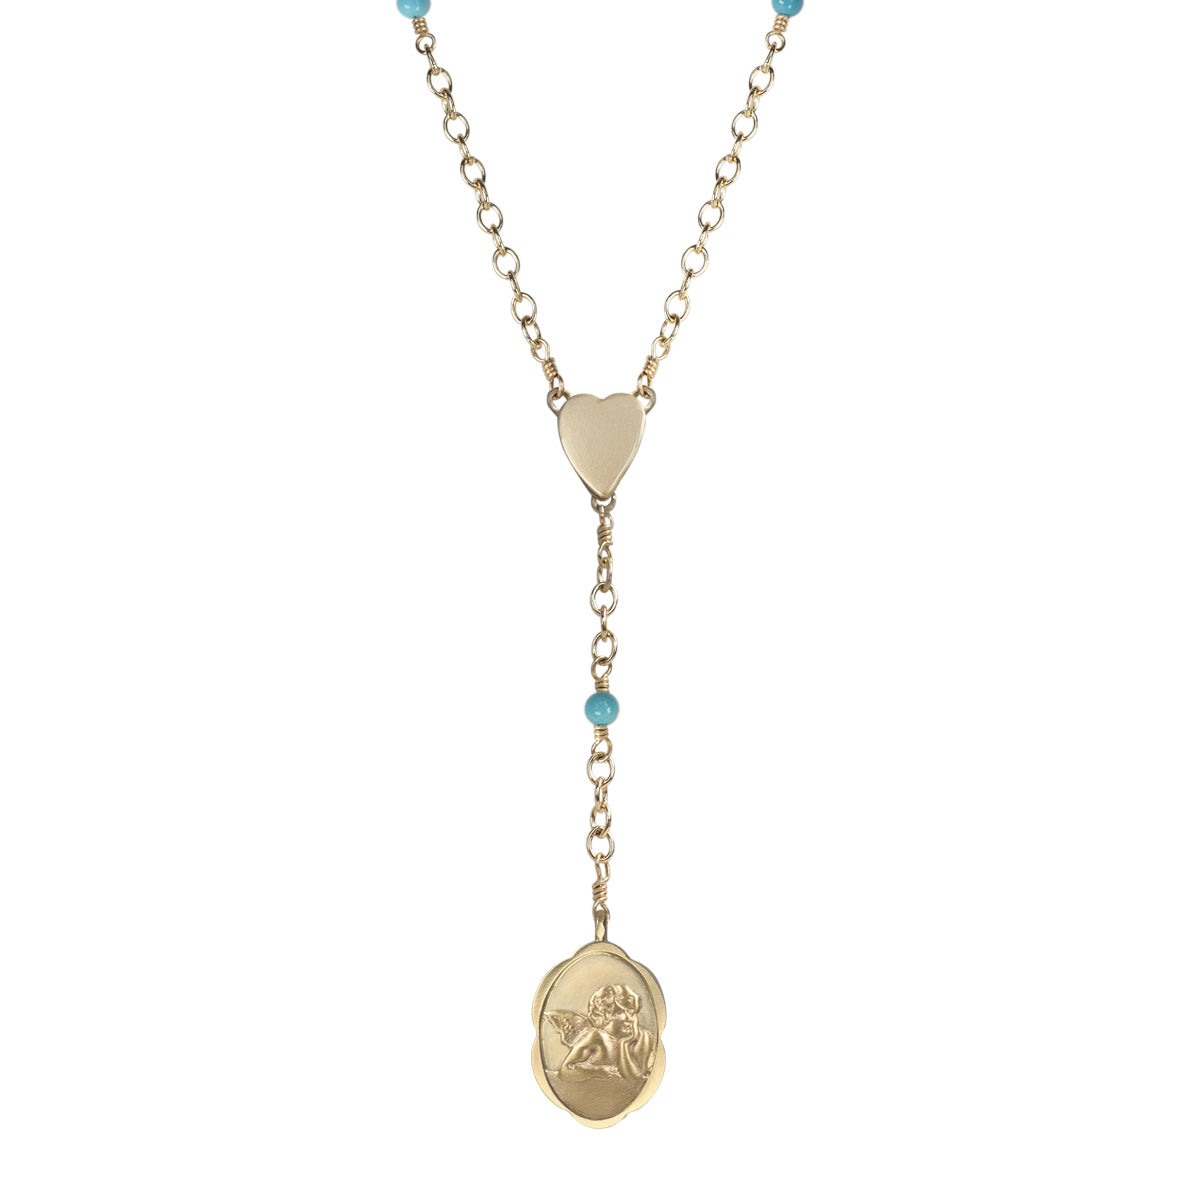 10k gold bracelet rosary - virgin mary - Pulsera en oro rosario virgen  maria | eBay